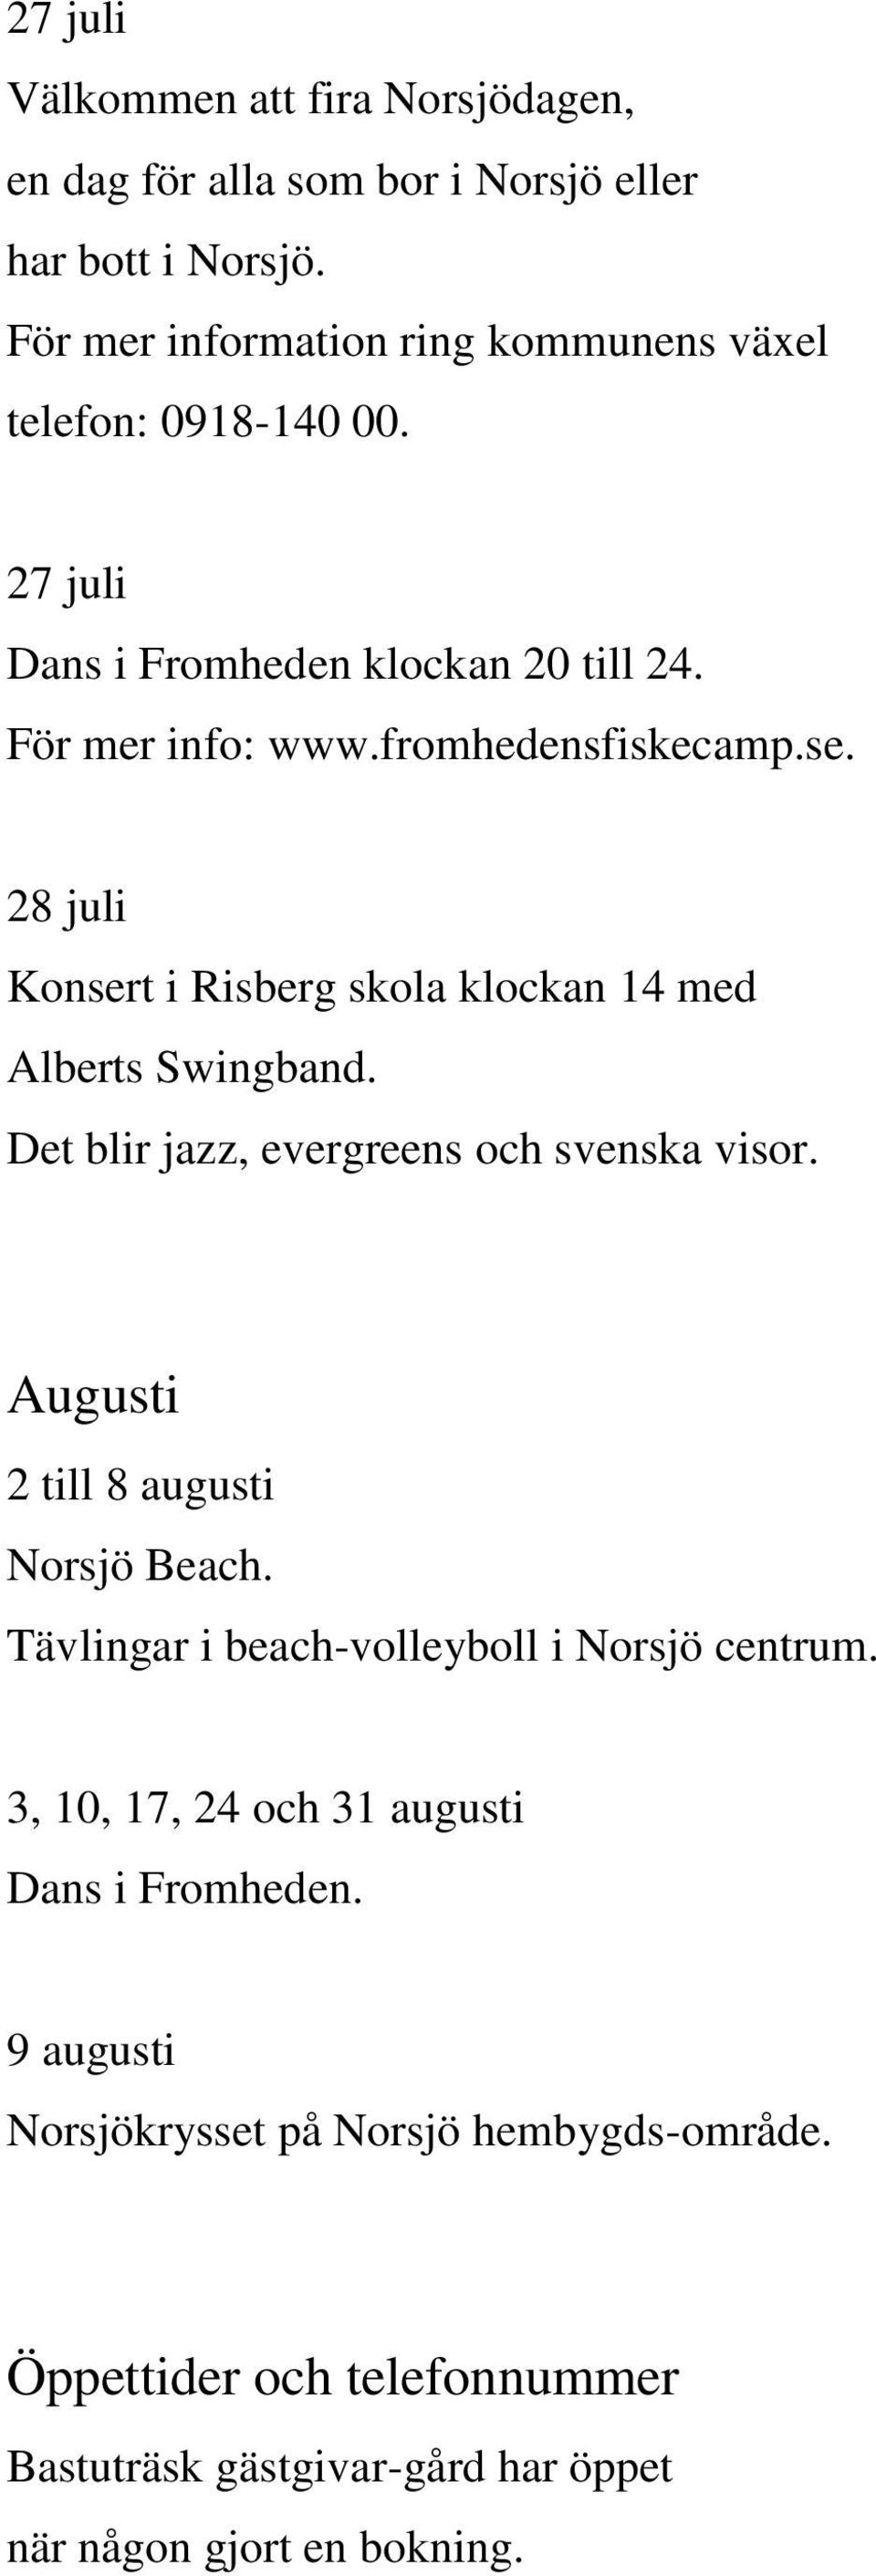 28 juli Konsert i Risberg skola klockan 14 med Alberts Swingband. Det blir jazz, evergreens och svenska visor. Augusti 2 till 8 augusti Norsjö Beach.